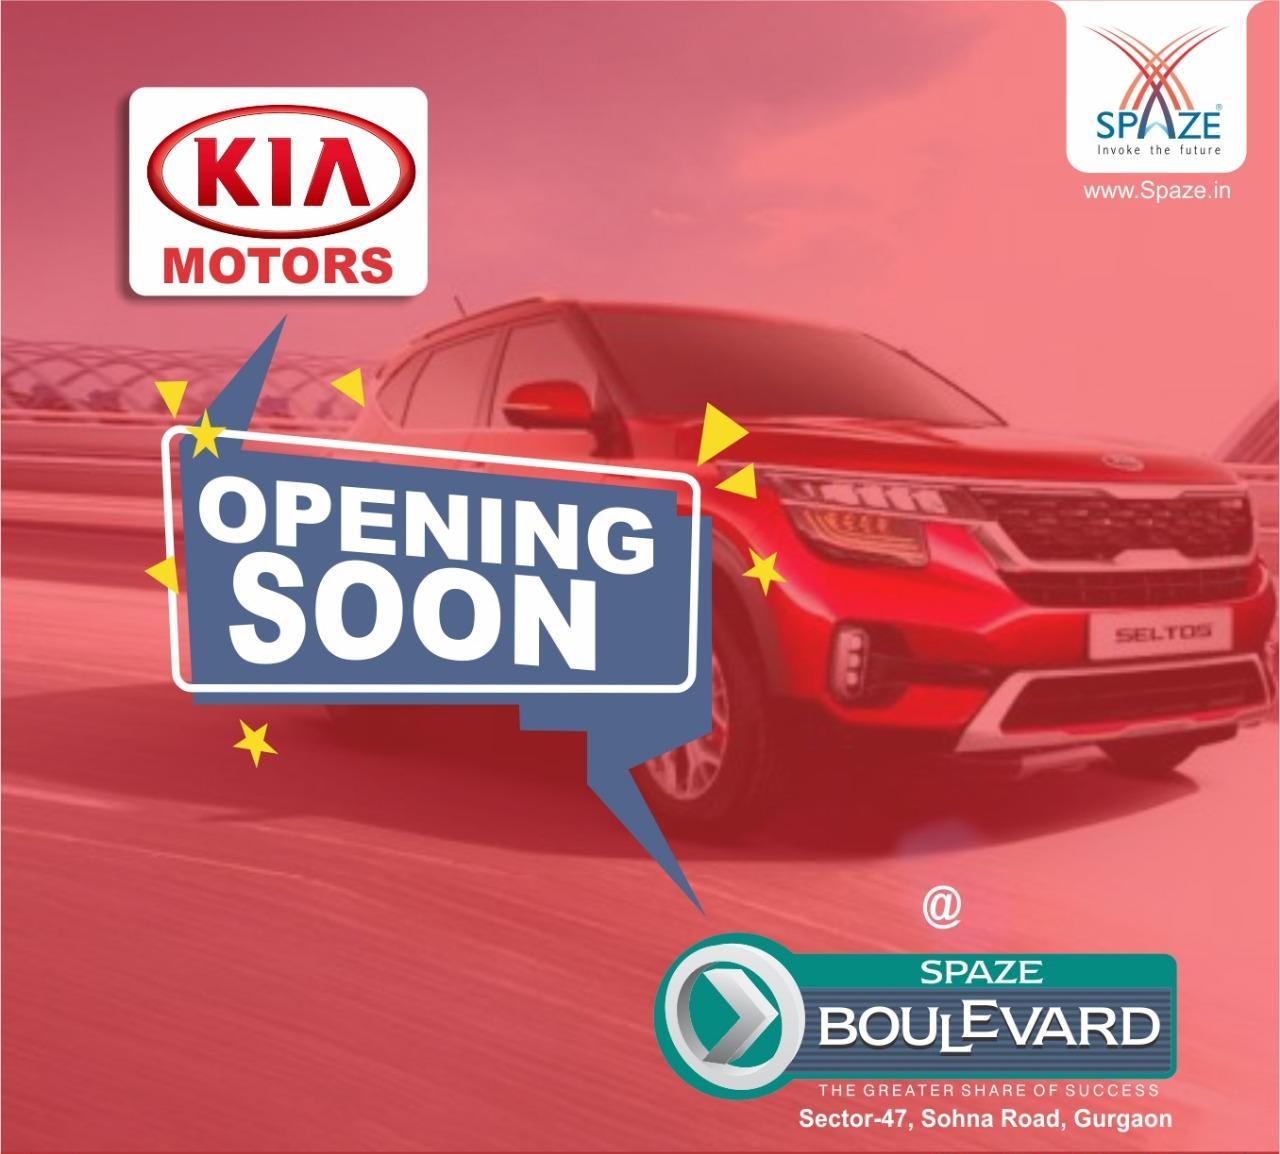 Kia Motors opening soon at Spaze Boulevard, Gurgaon